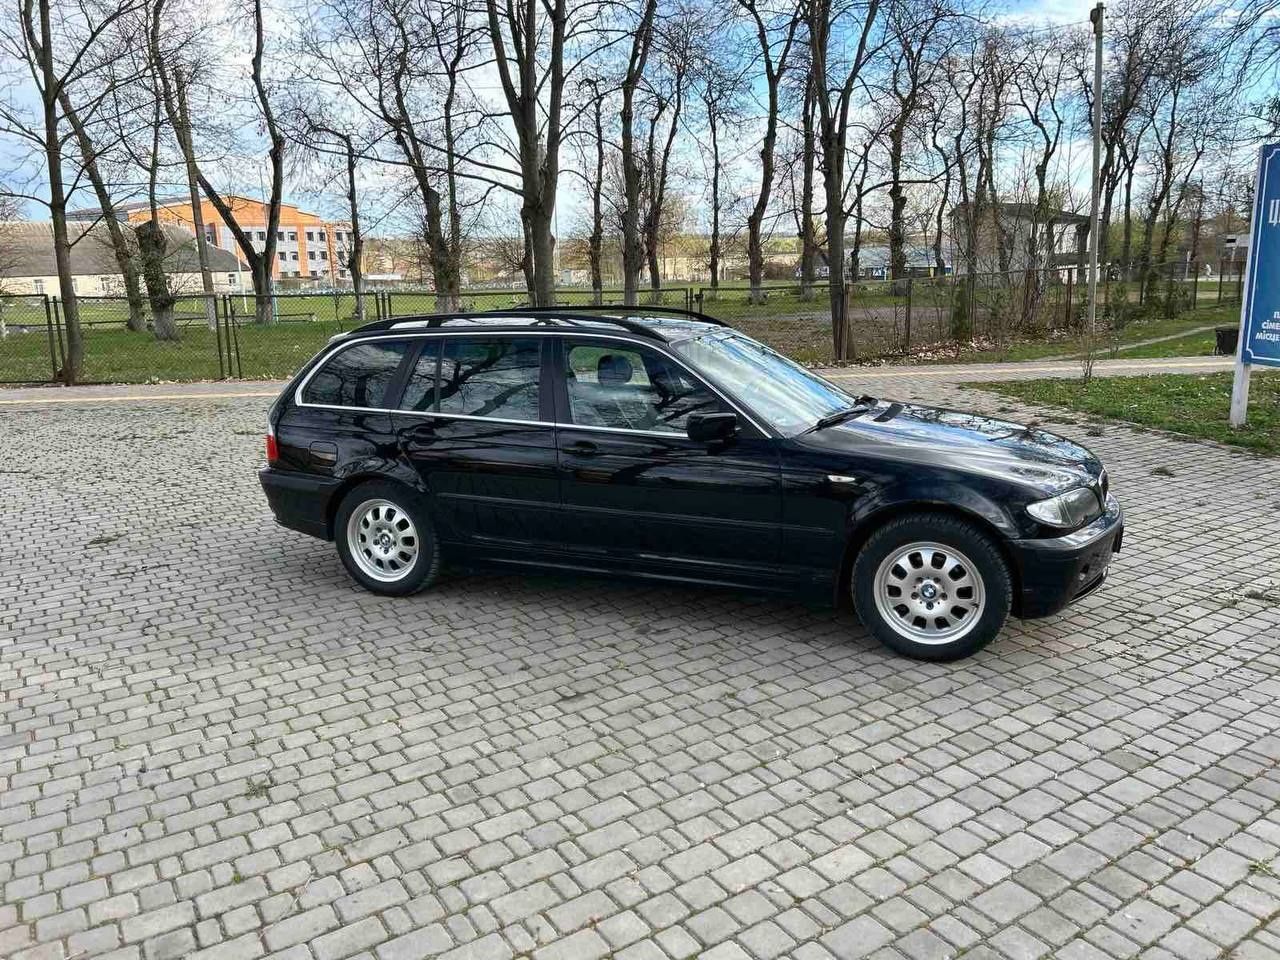 Продається BMW 316i